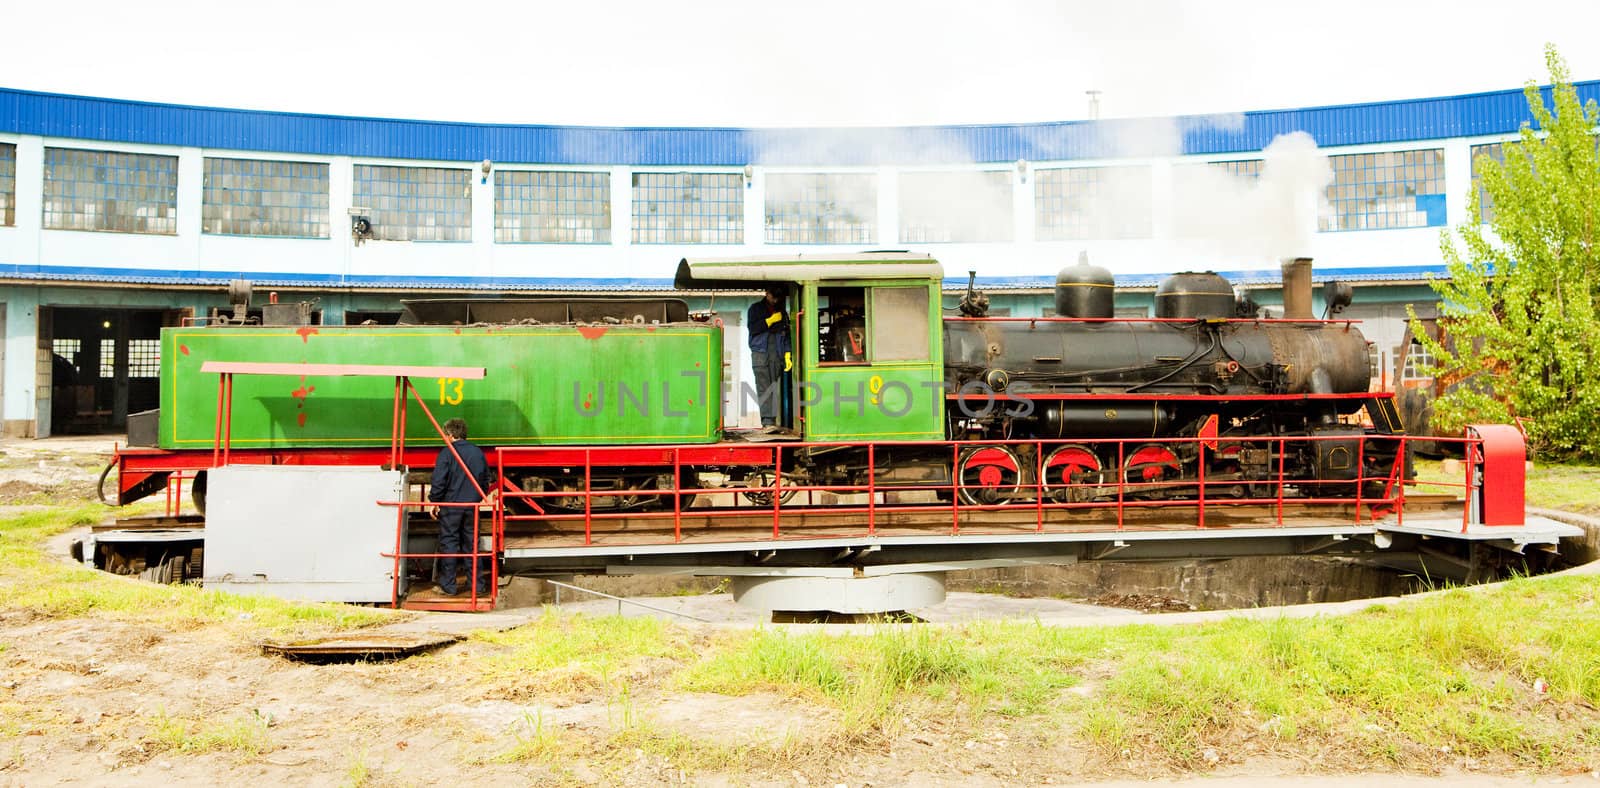 steam locomotive in depot, Kostolac, Serbia